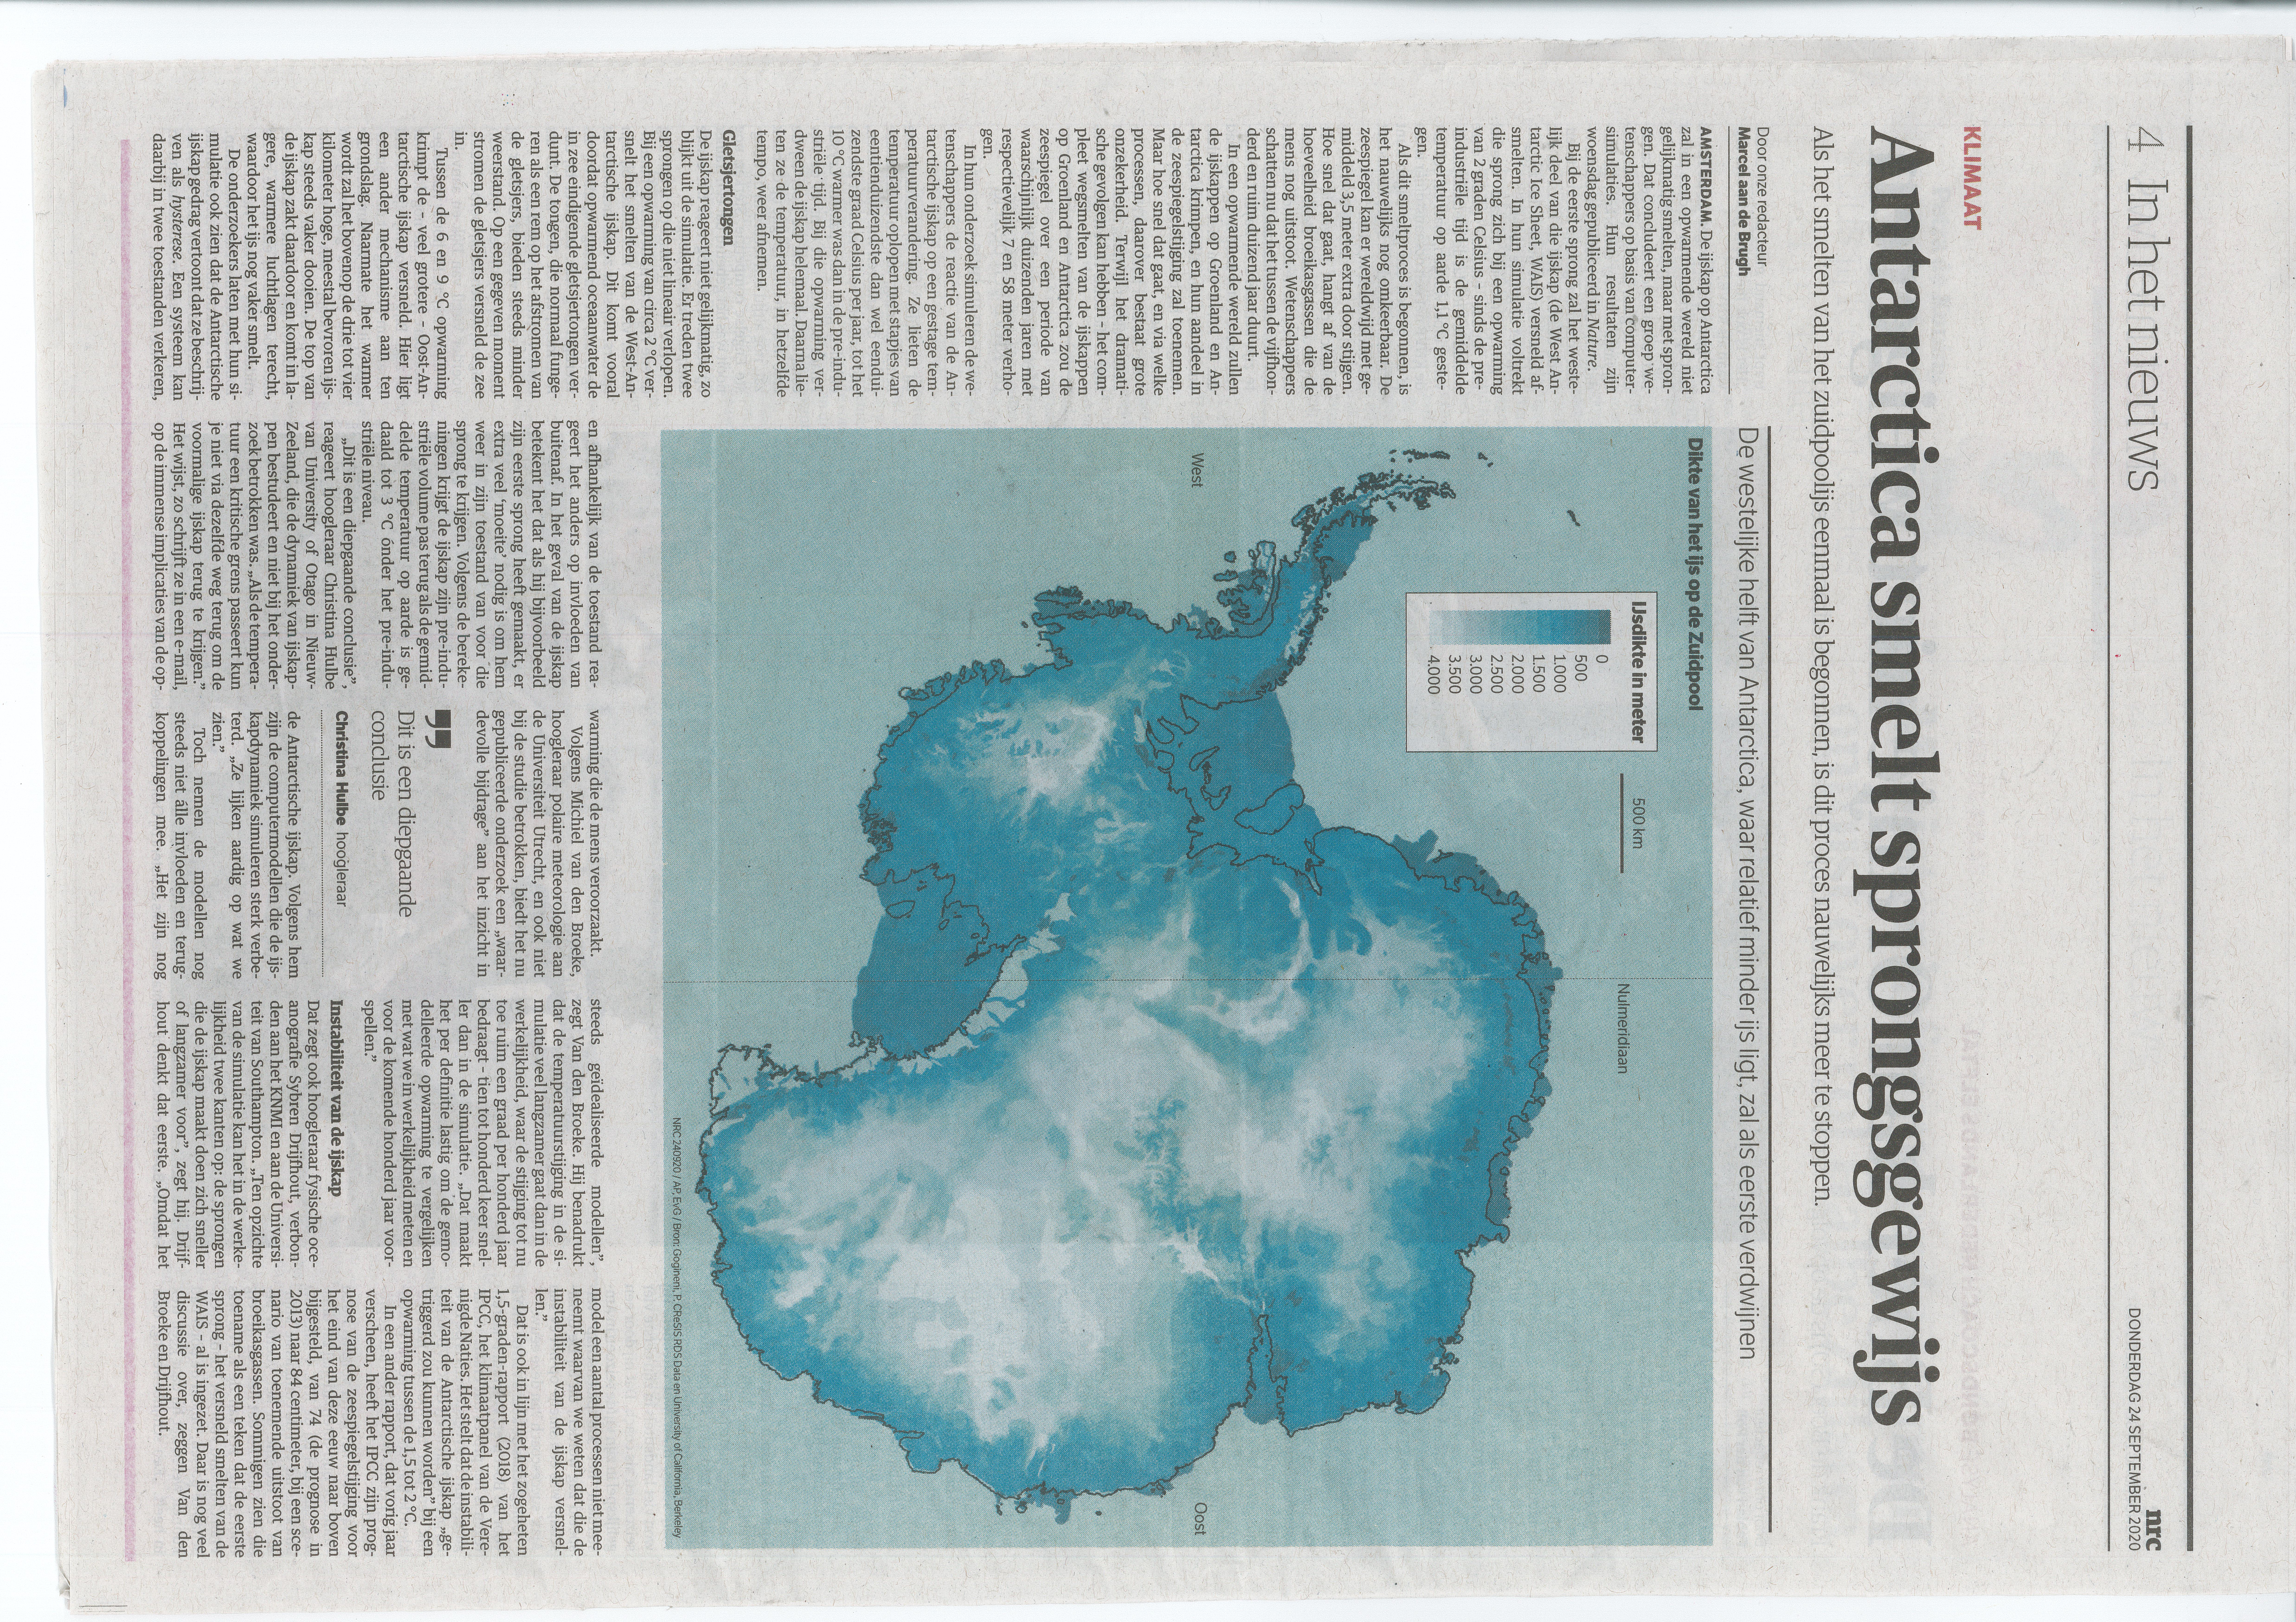 Kees de Haar, medium (1937-2018) "computermodel van 24-09-2020 schiet te kort: Antarctica zal in onze generaties op onverwachte momenten in reusachtige ijsmassa's eerst langzaam maar dan per sprong in één keer afbreken. Sprongsgewijs betekent met reusachtige schokken in een split van een geologische seconde." Zie Apocalyps van de aarde in vijf bedrijven, Mr G.J.A.M. Bogaers, Laren NH, oktober 2017. Vandaag Laren NH, zaterdag 26 september 2020, 10.48 uur AM.